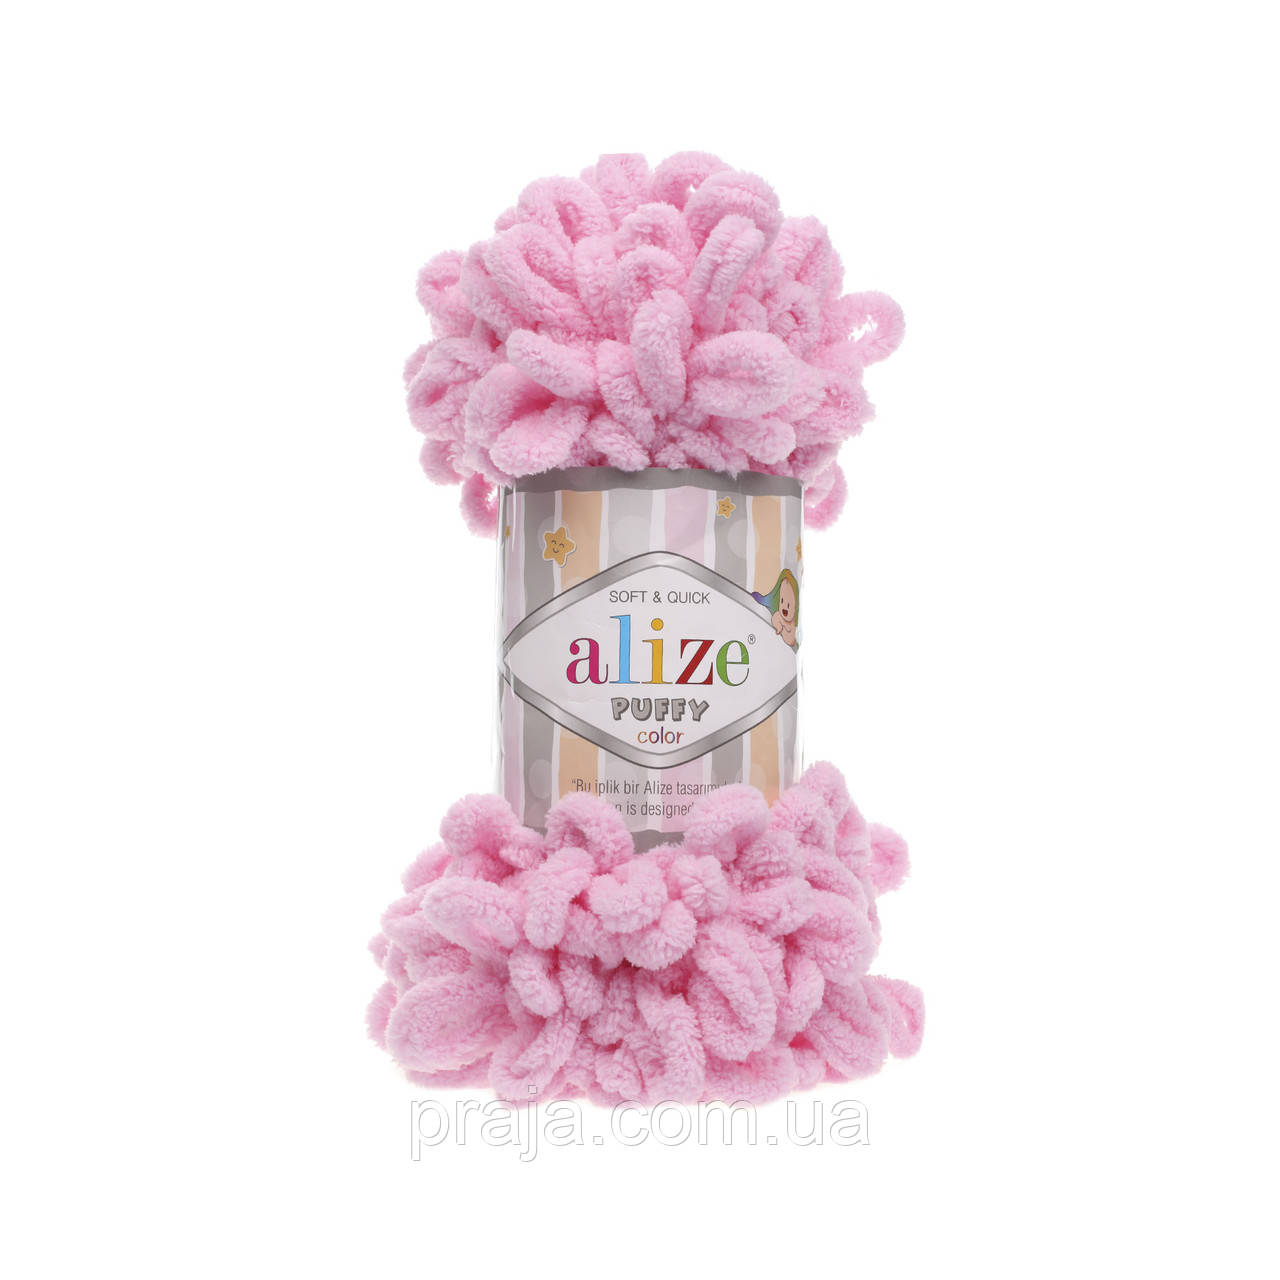 Пряжа Alize puffy - 185 рожевий  (Пуффі Алізе) велика петелька